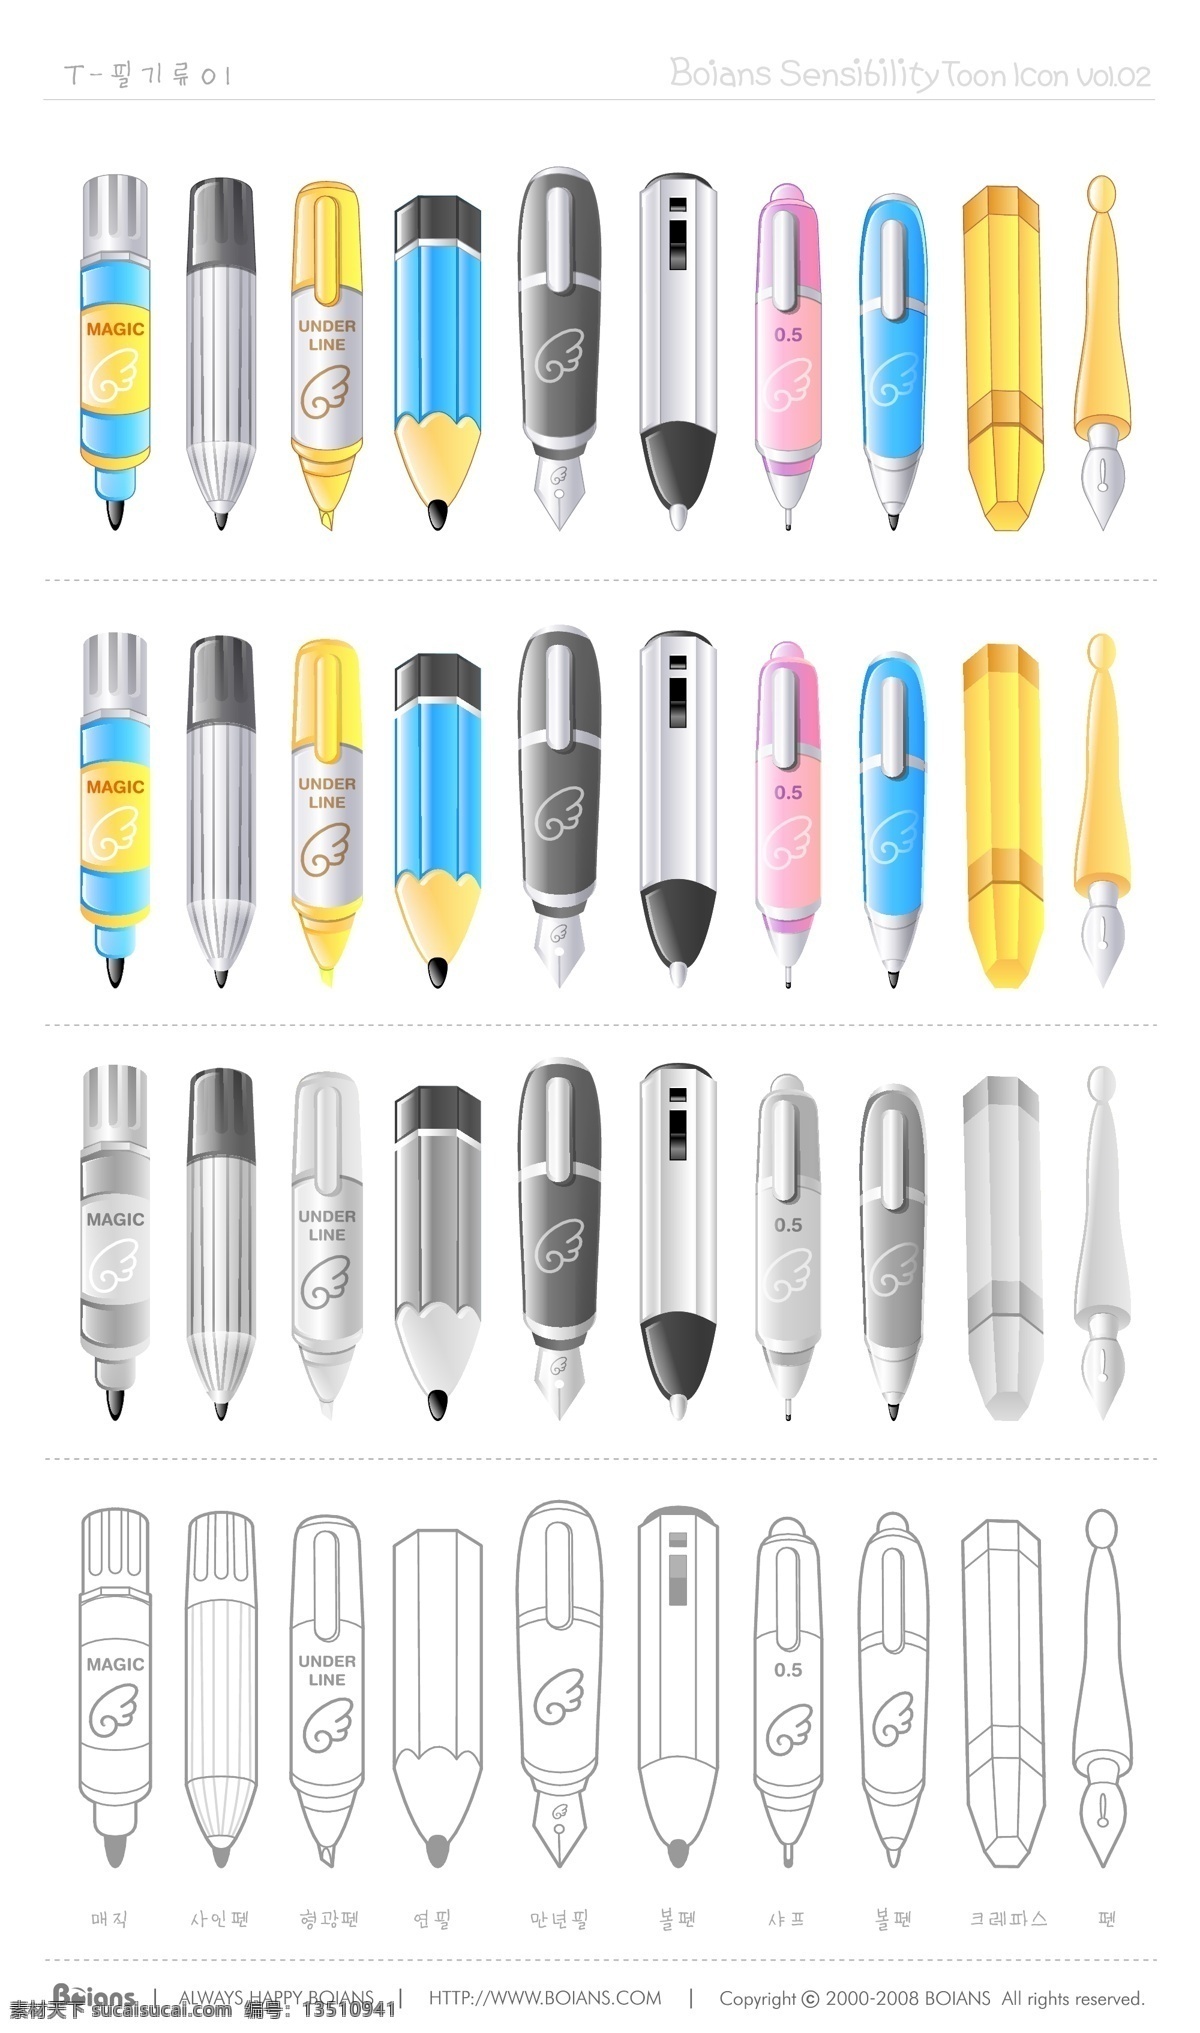 铅笔 钢笔 记号笔 碳素笔 黑笔 自动铅笔 蜡笔 水彩笔 复古 矢量图 简笔画 学具素材 生活百科 学习用品